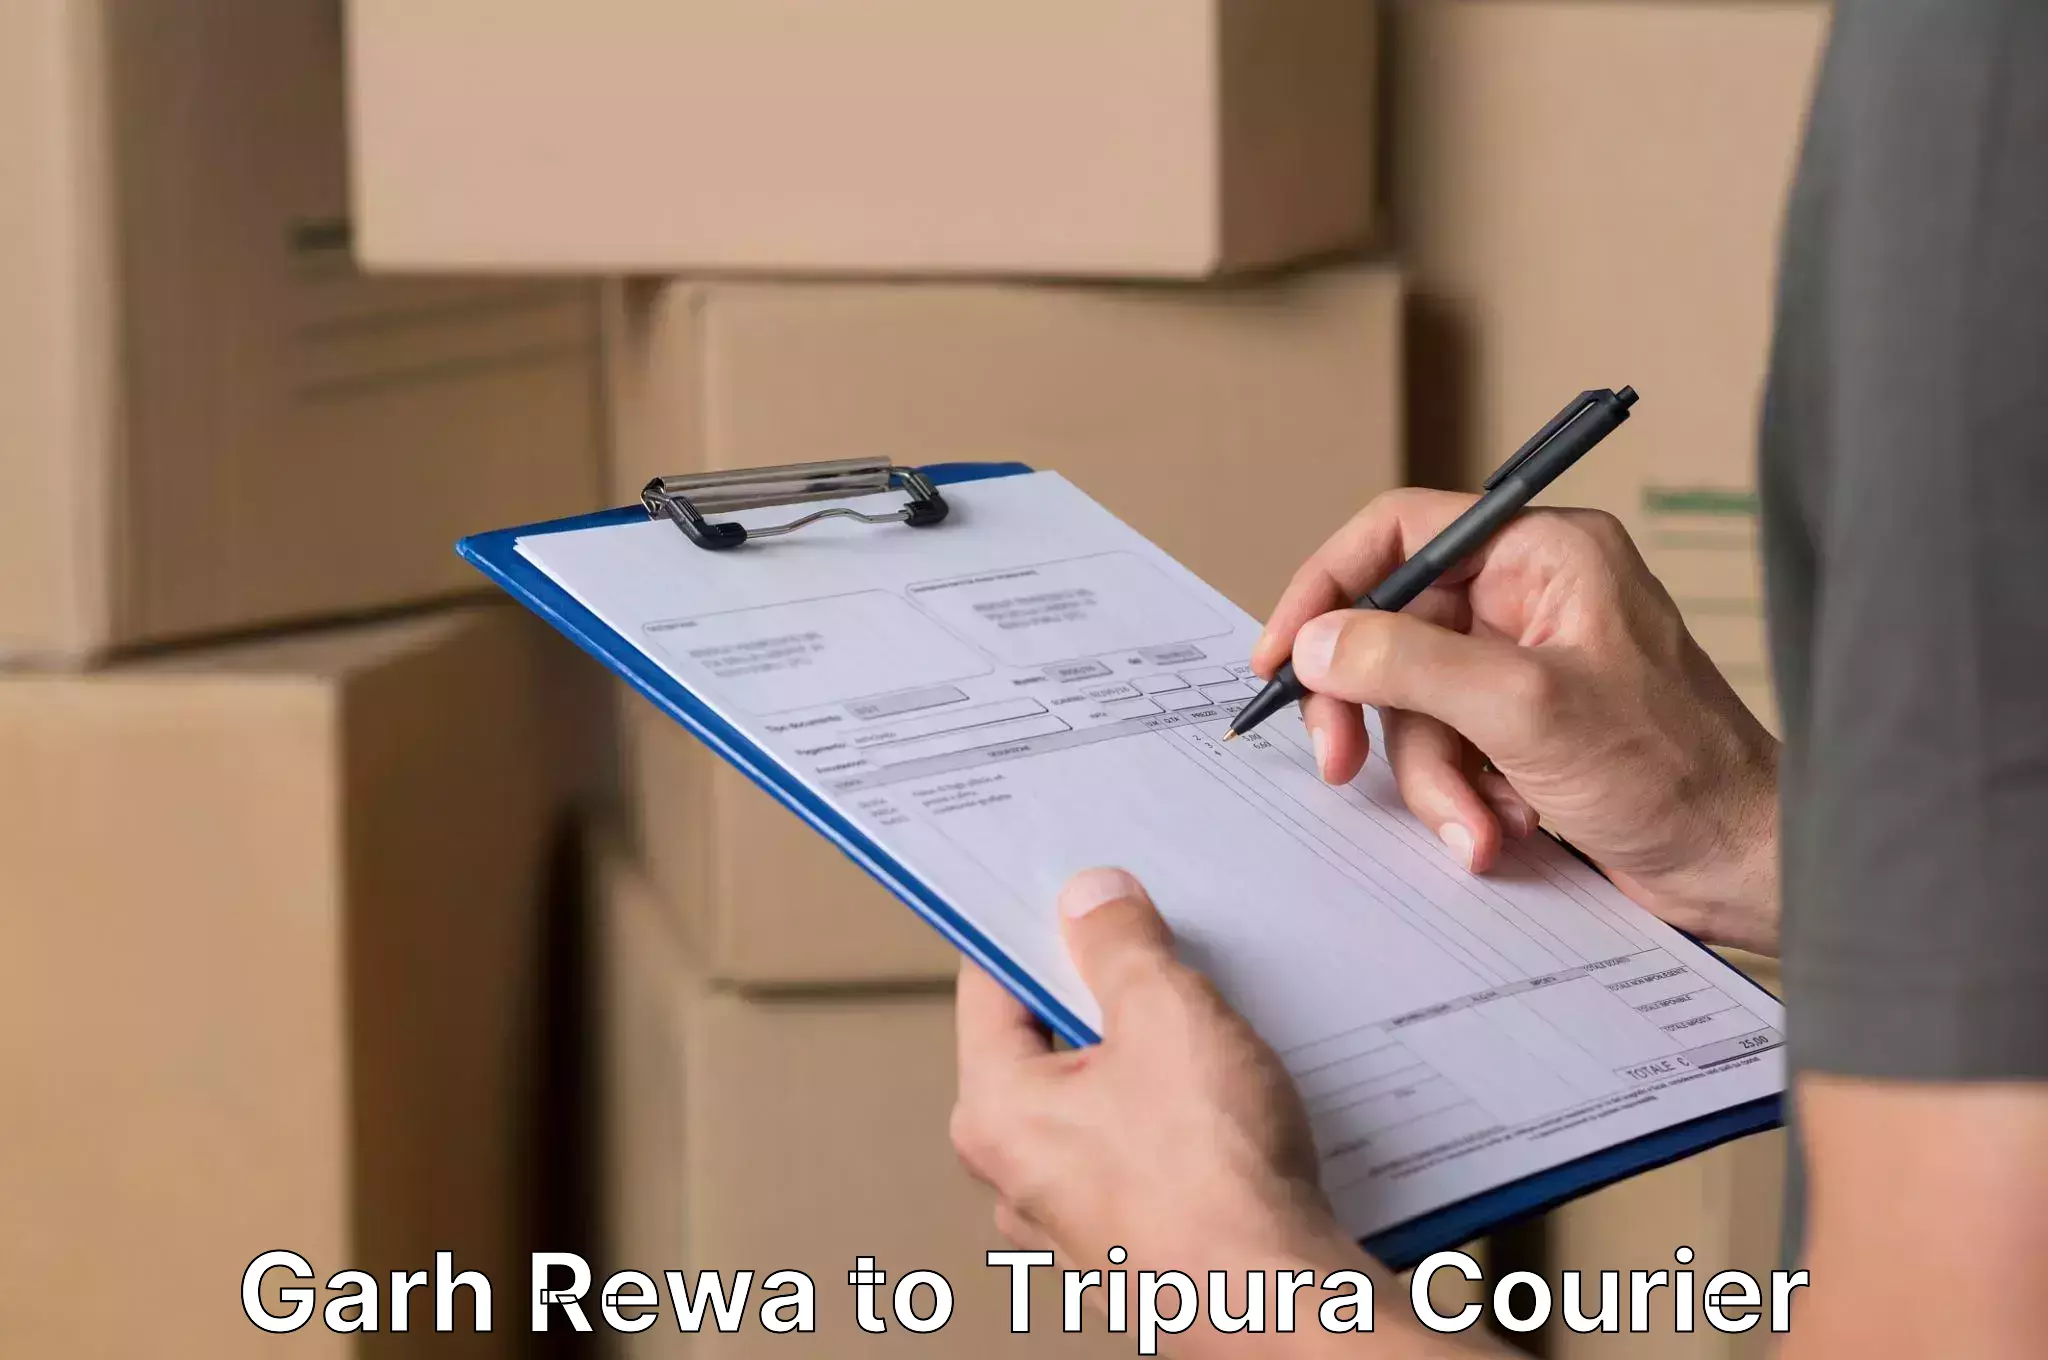 Furniture relocation experts Garh Rewa to Tripura